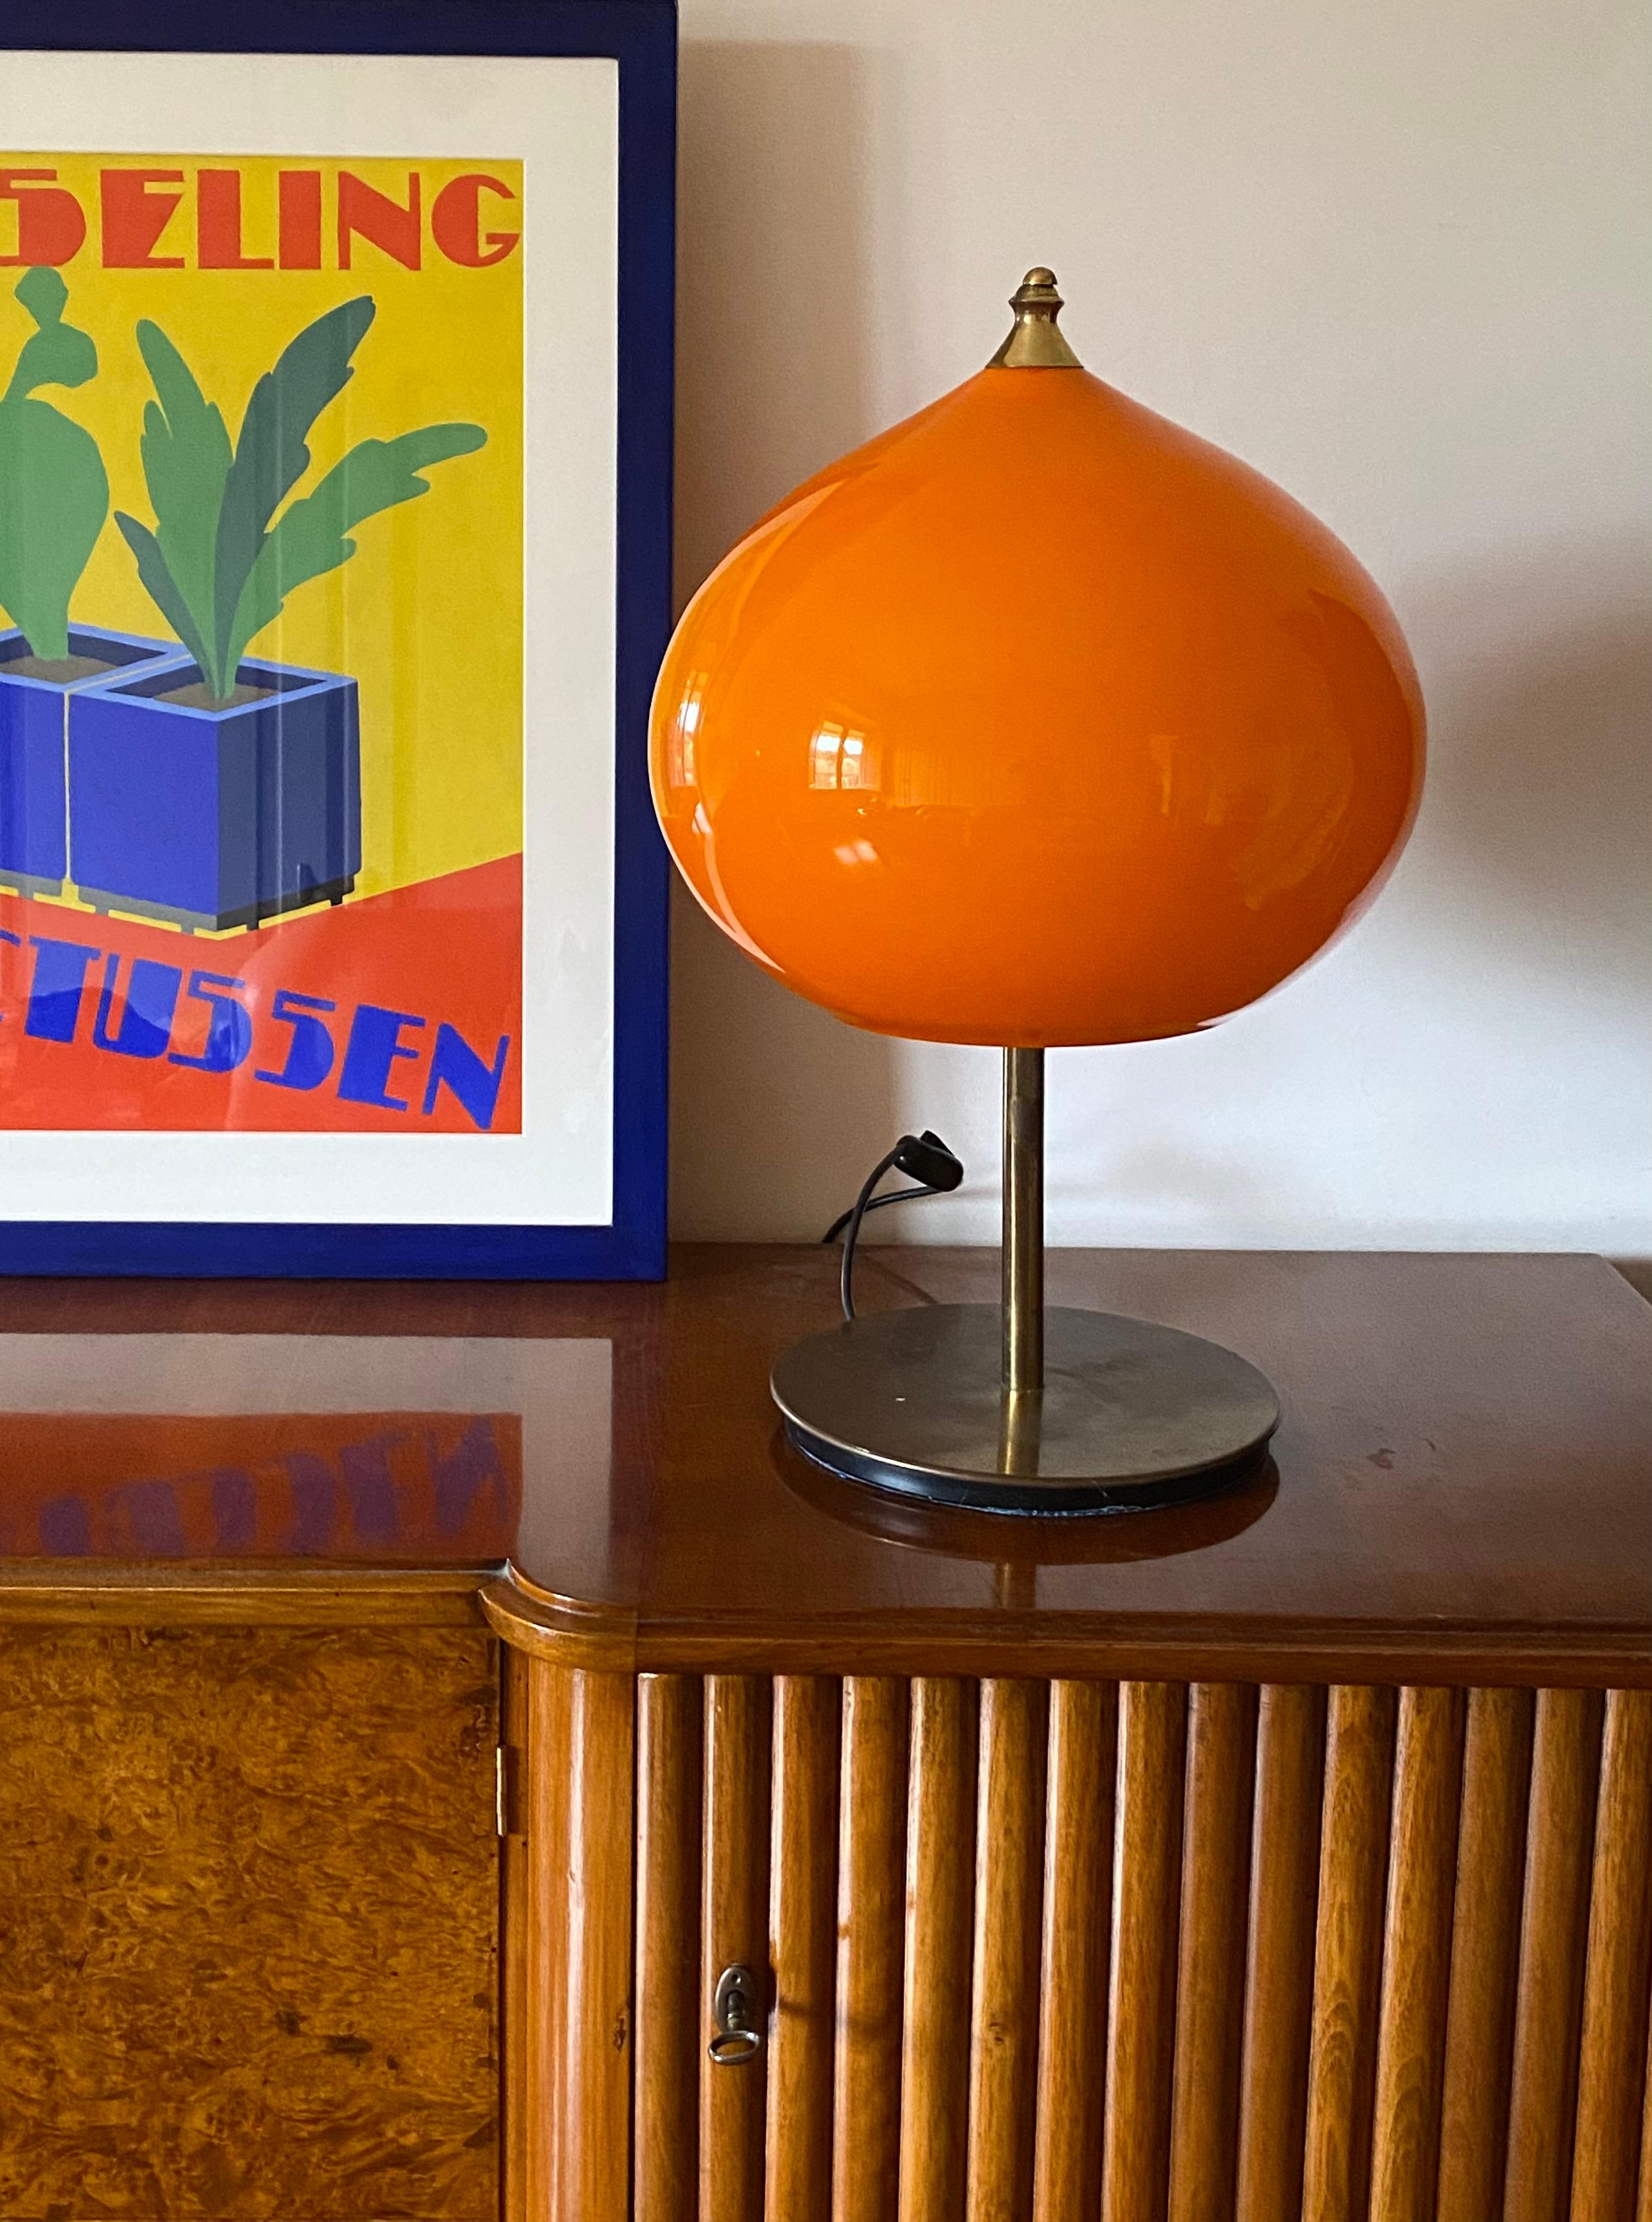 Moderne monumentale Tischleuchte, entworfen von Alessandro Pianon

Vistosi Italien, ca. 1960er Jahre

Orangefarbenes Muranoglas in Zwiebelform 

messingstab und Sockel

53 cm H - Durchm. 27 cm

Dreifache Glühbirnen. Europäischer Stecker.

Zustand: